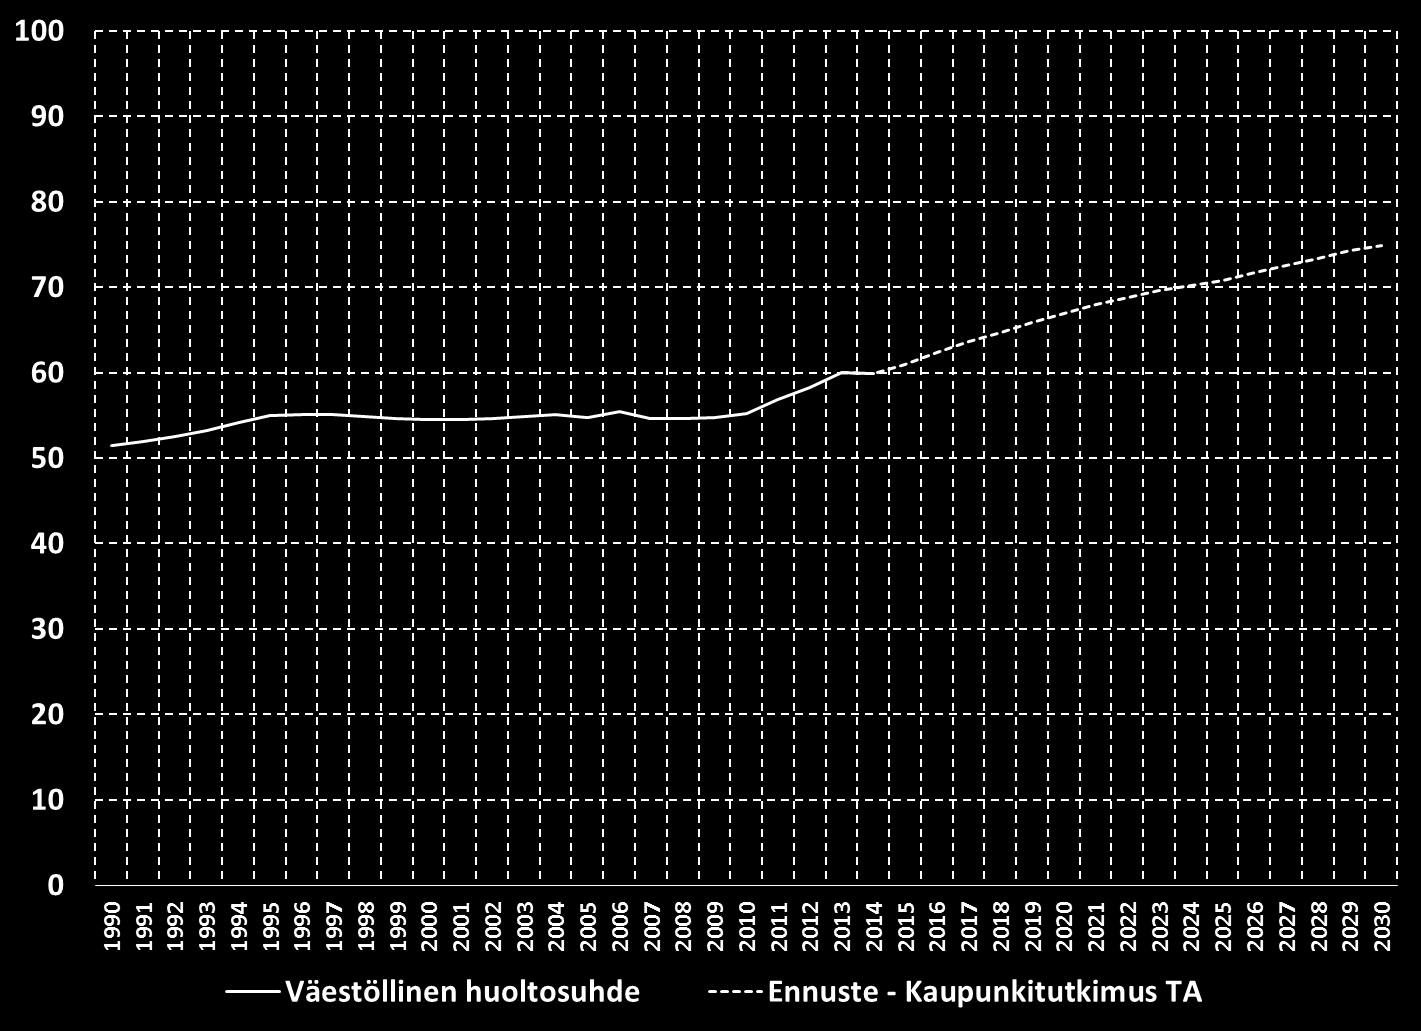 1.5.16 Väestöllinen huoltosuhde Hämeenlinnassa 1990